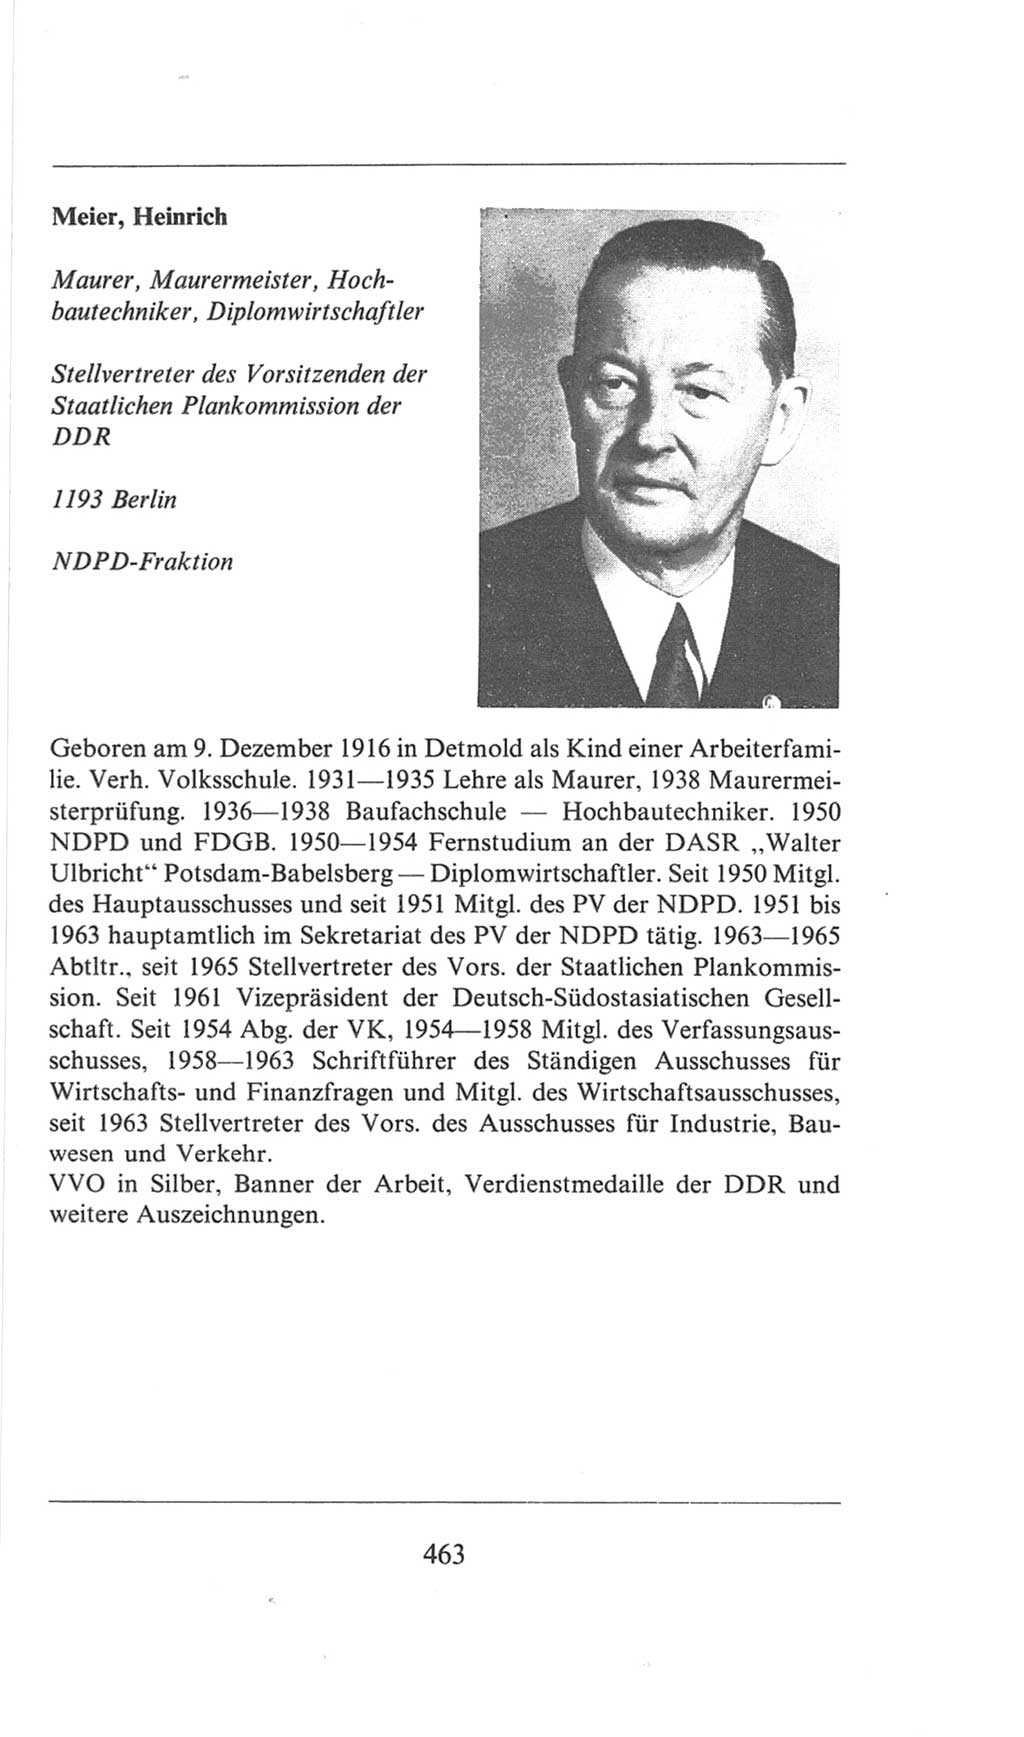 Volkskammer (VK) der Deutschen Demokratischen Republik (DDR), 6. Wahlperiode 1971-1976, Seite 463 (VK. DDR 6. WP. 1971-1976, S. 463)